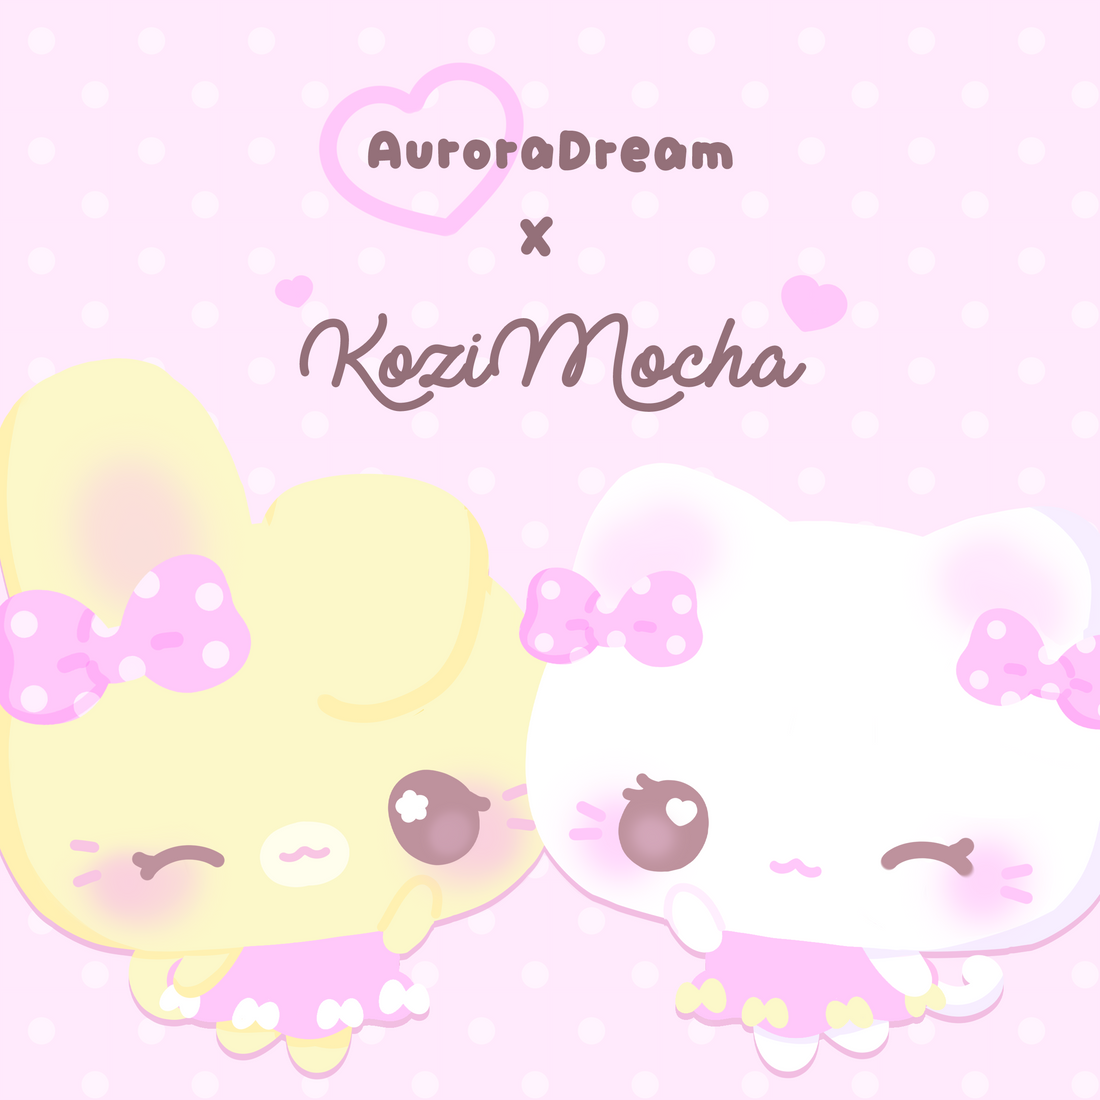 Aurora Dream x Kozi Mocha